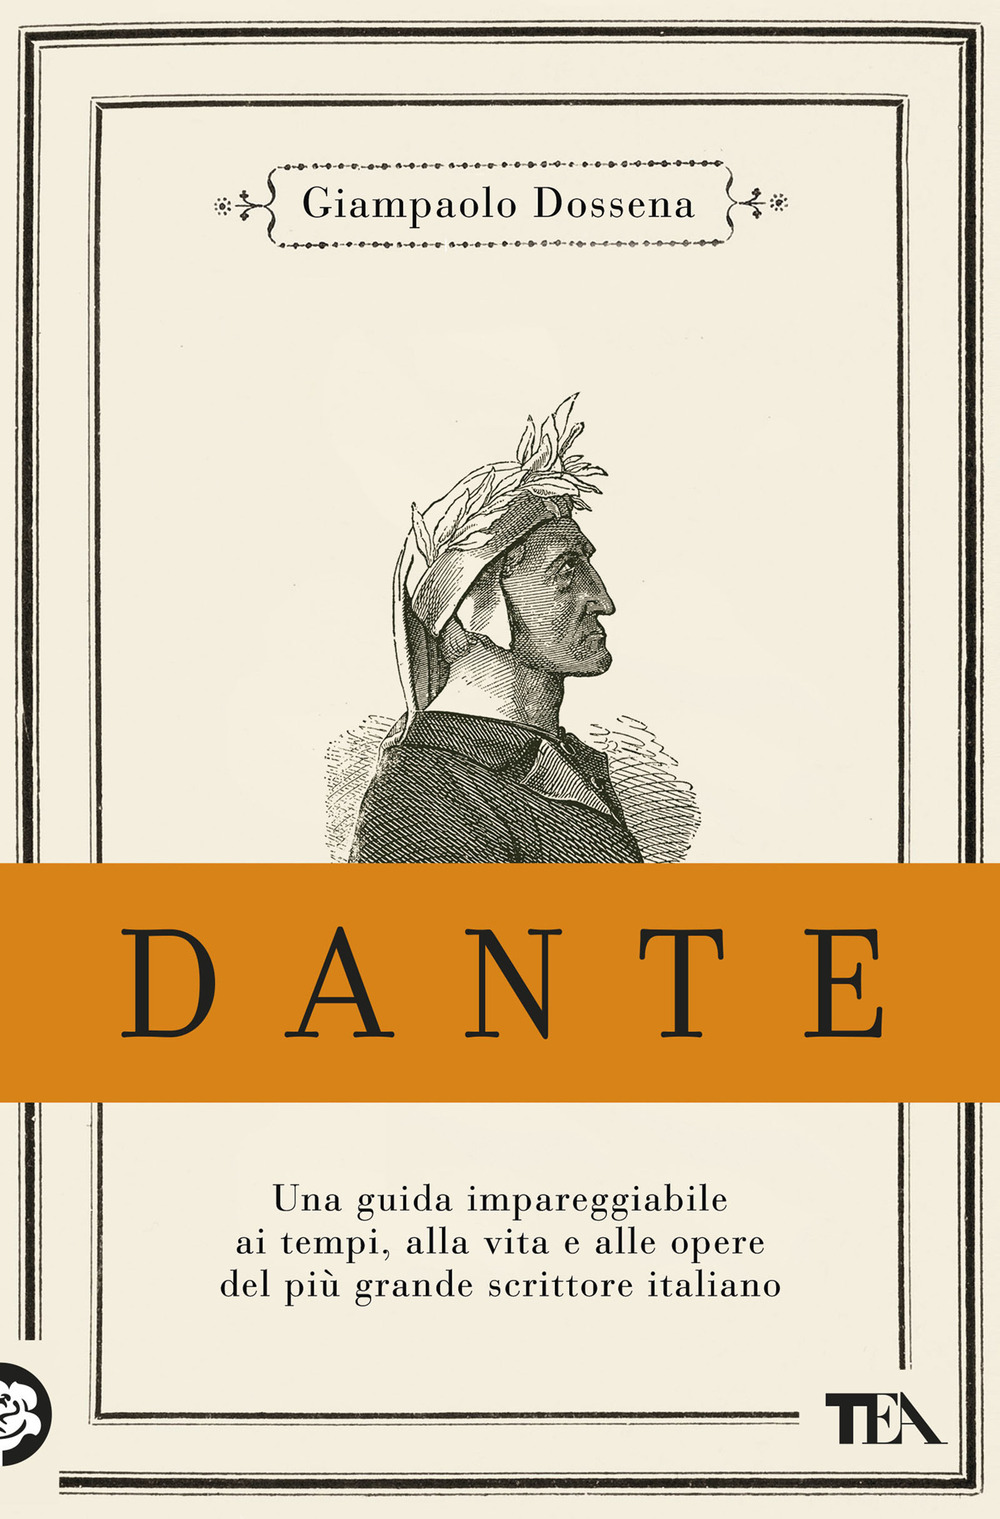 Dante. Edizione anniversario 750 anni